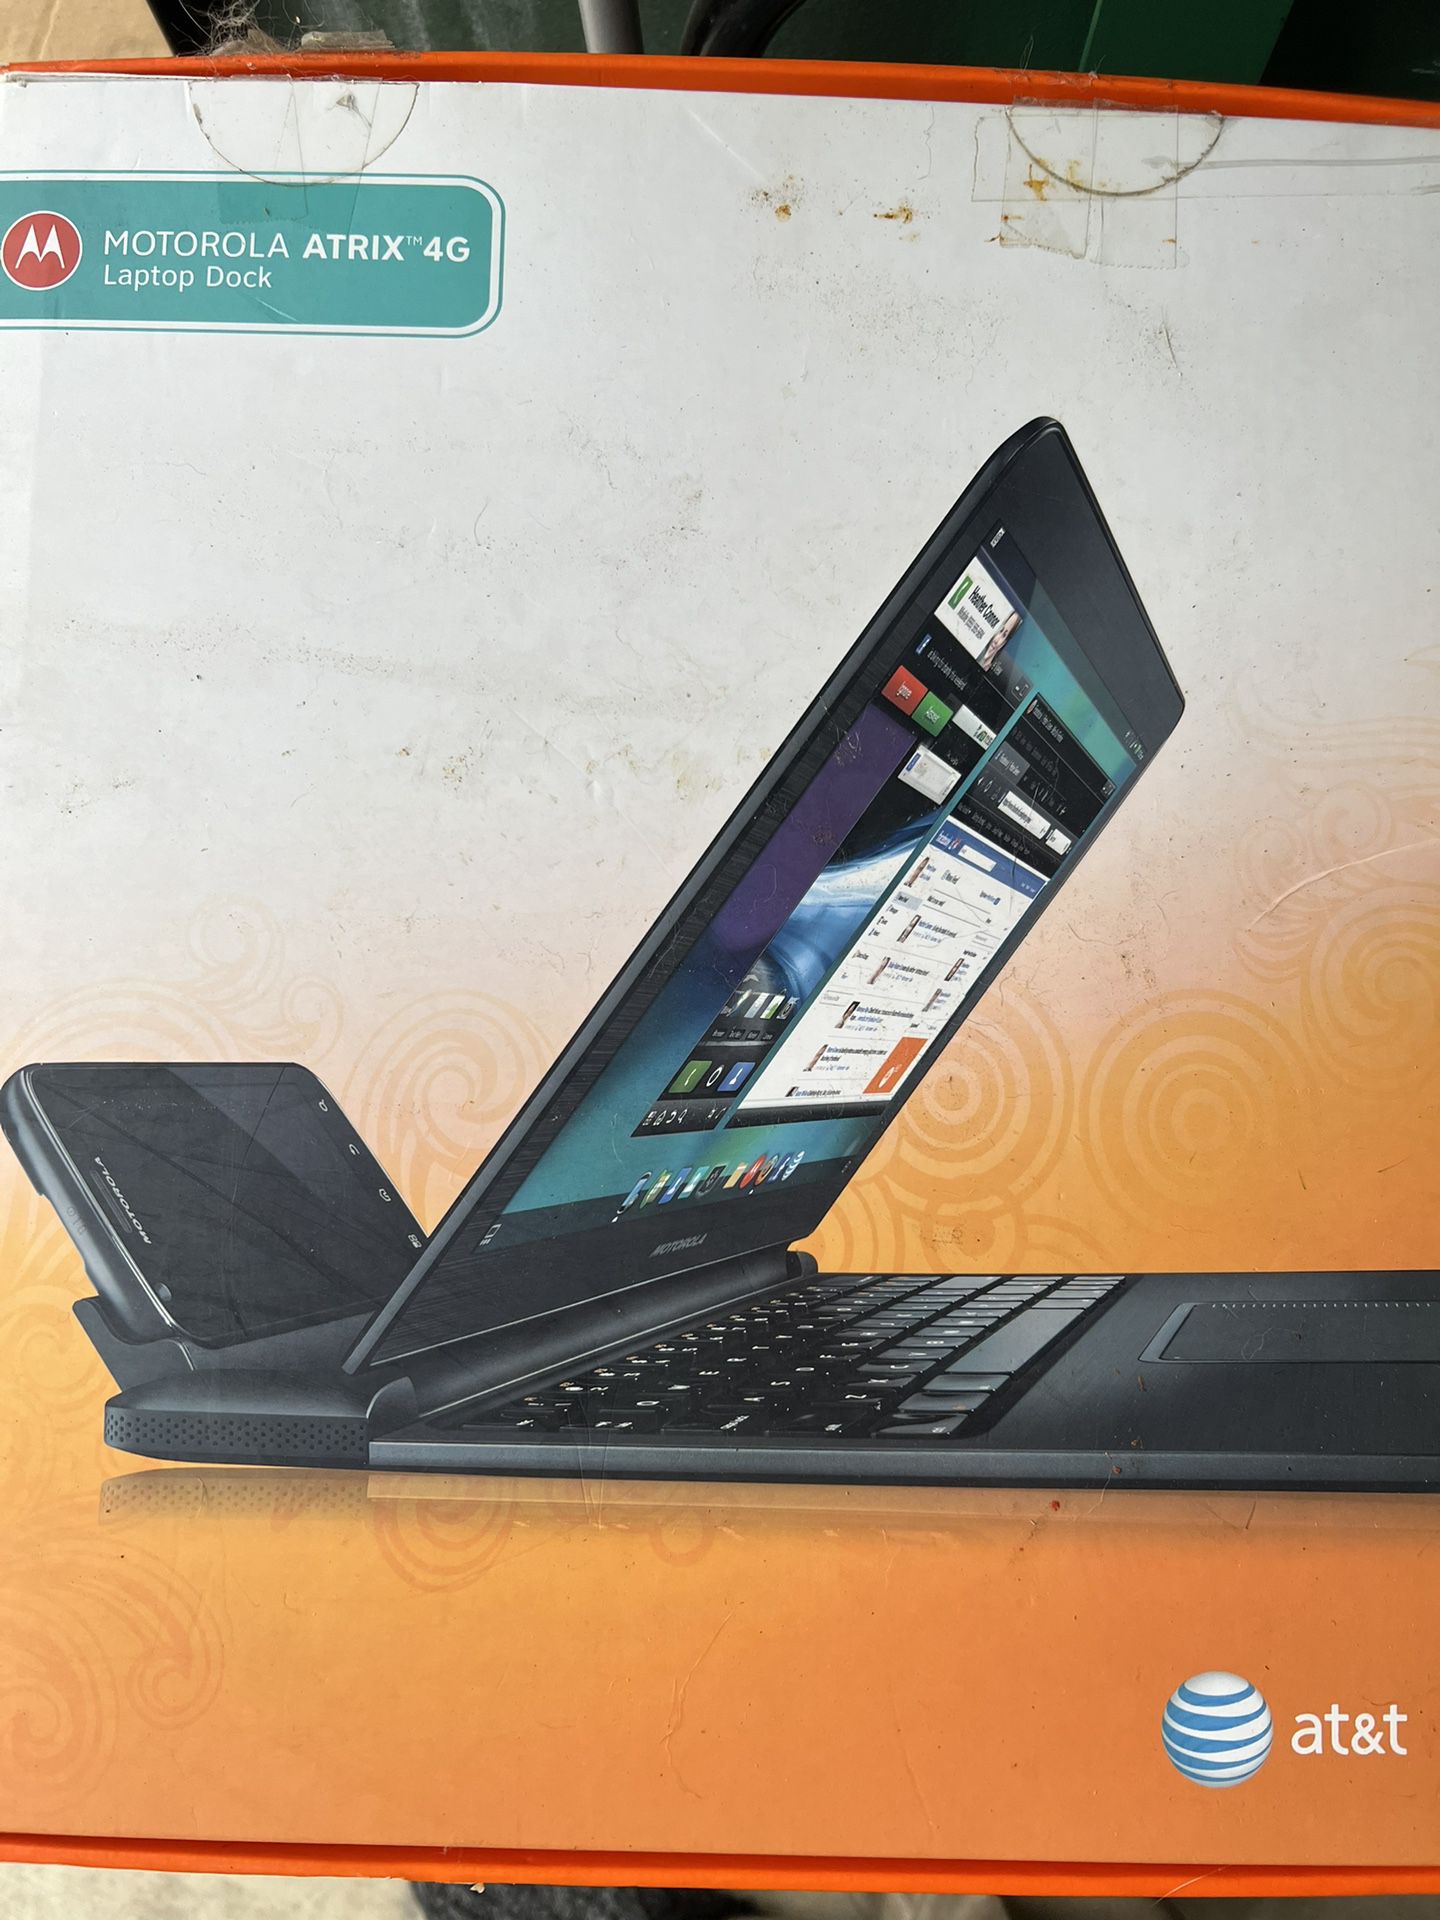 AT&T Laptop Dock for Motorola ATRIX 4G 